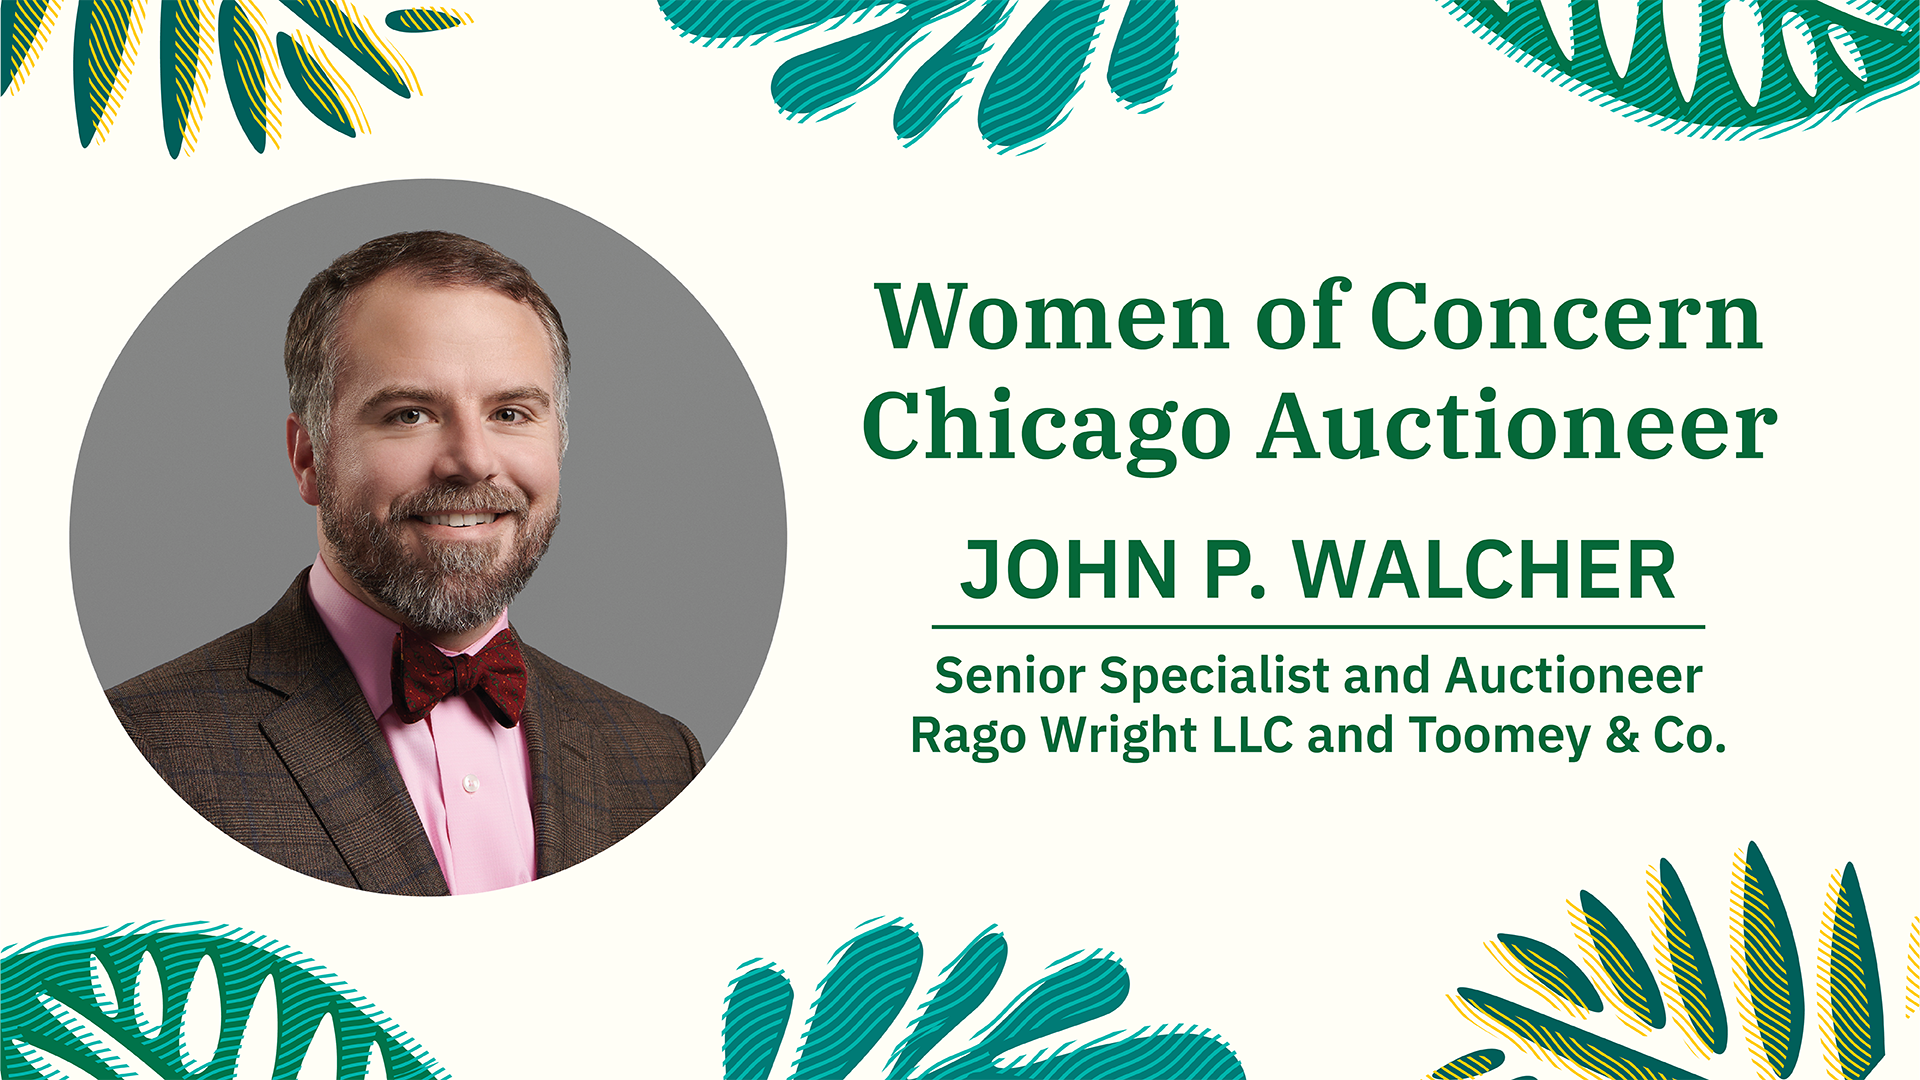 John Walcher, Auctioneer, Women of Concern Chicago